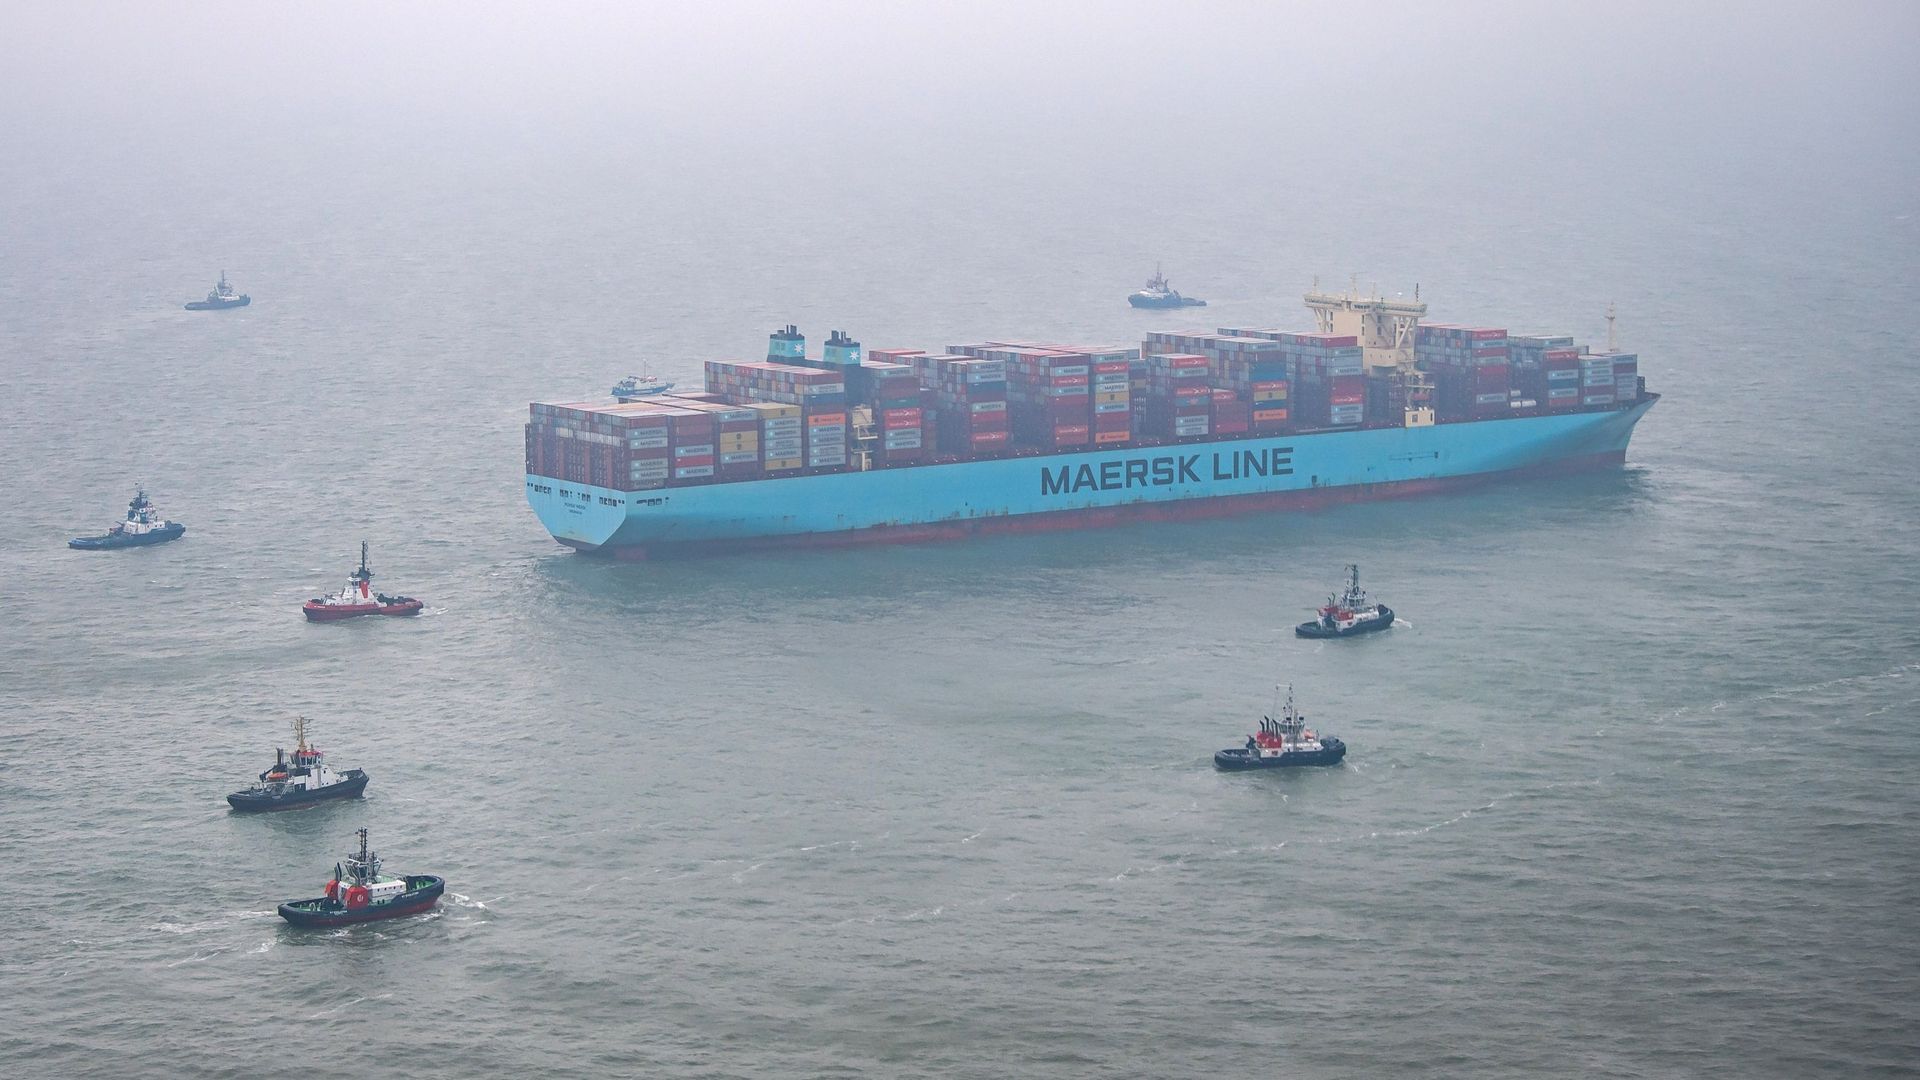 Des remorqueurs passent devant le porte-conteneurs "Mumbai Maersk" en mer du Nord, 400 mètres de long, échoué au large des côtes allemandes.